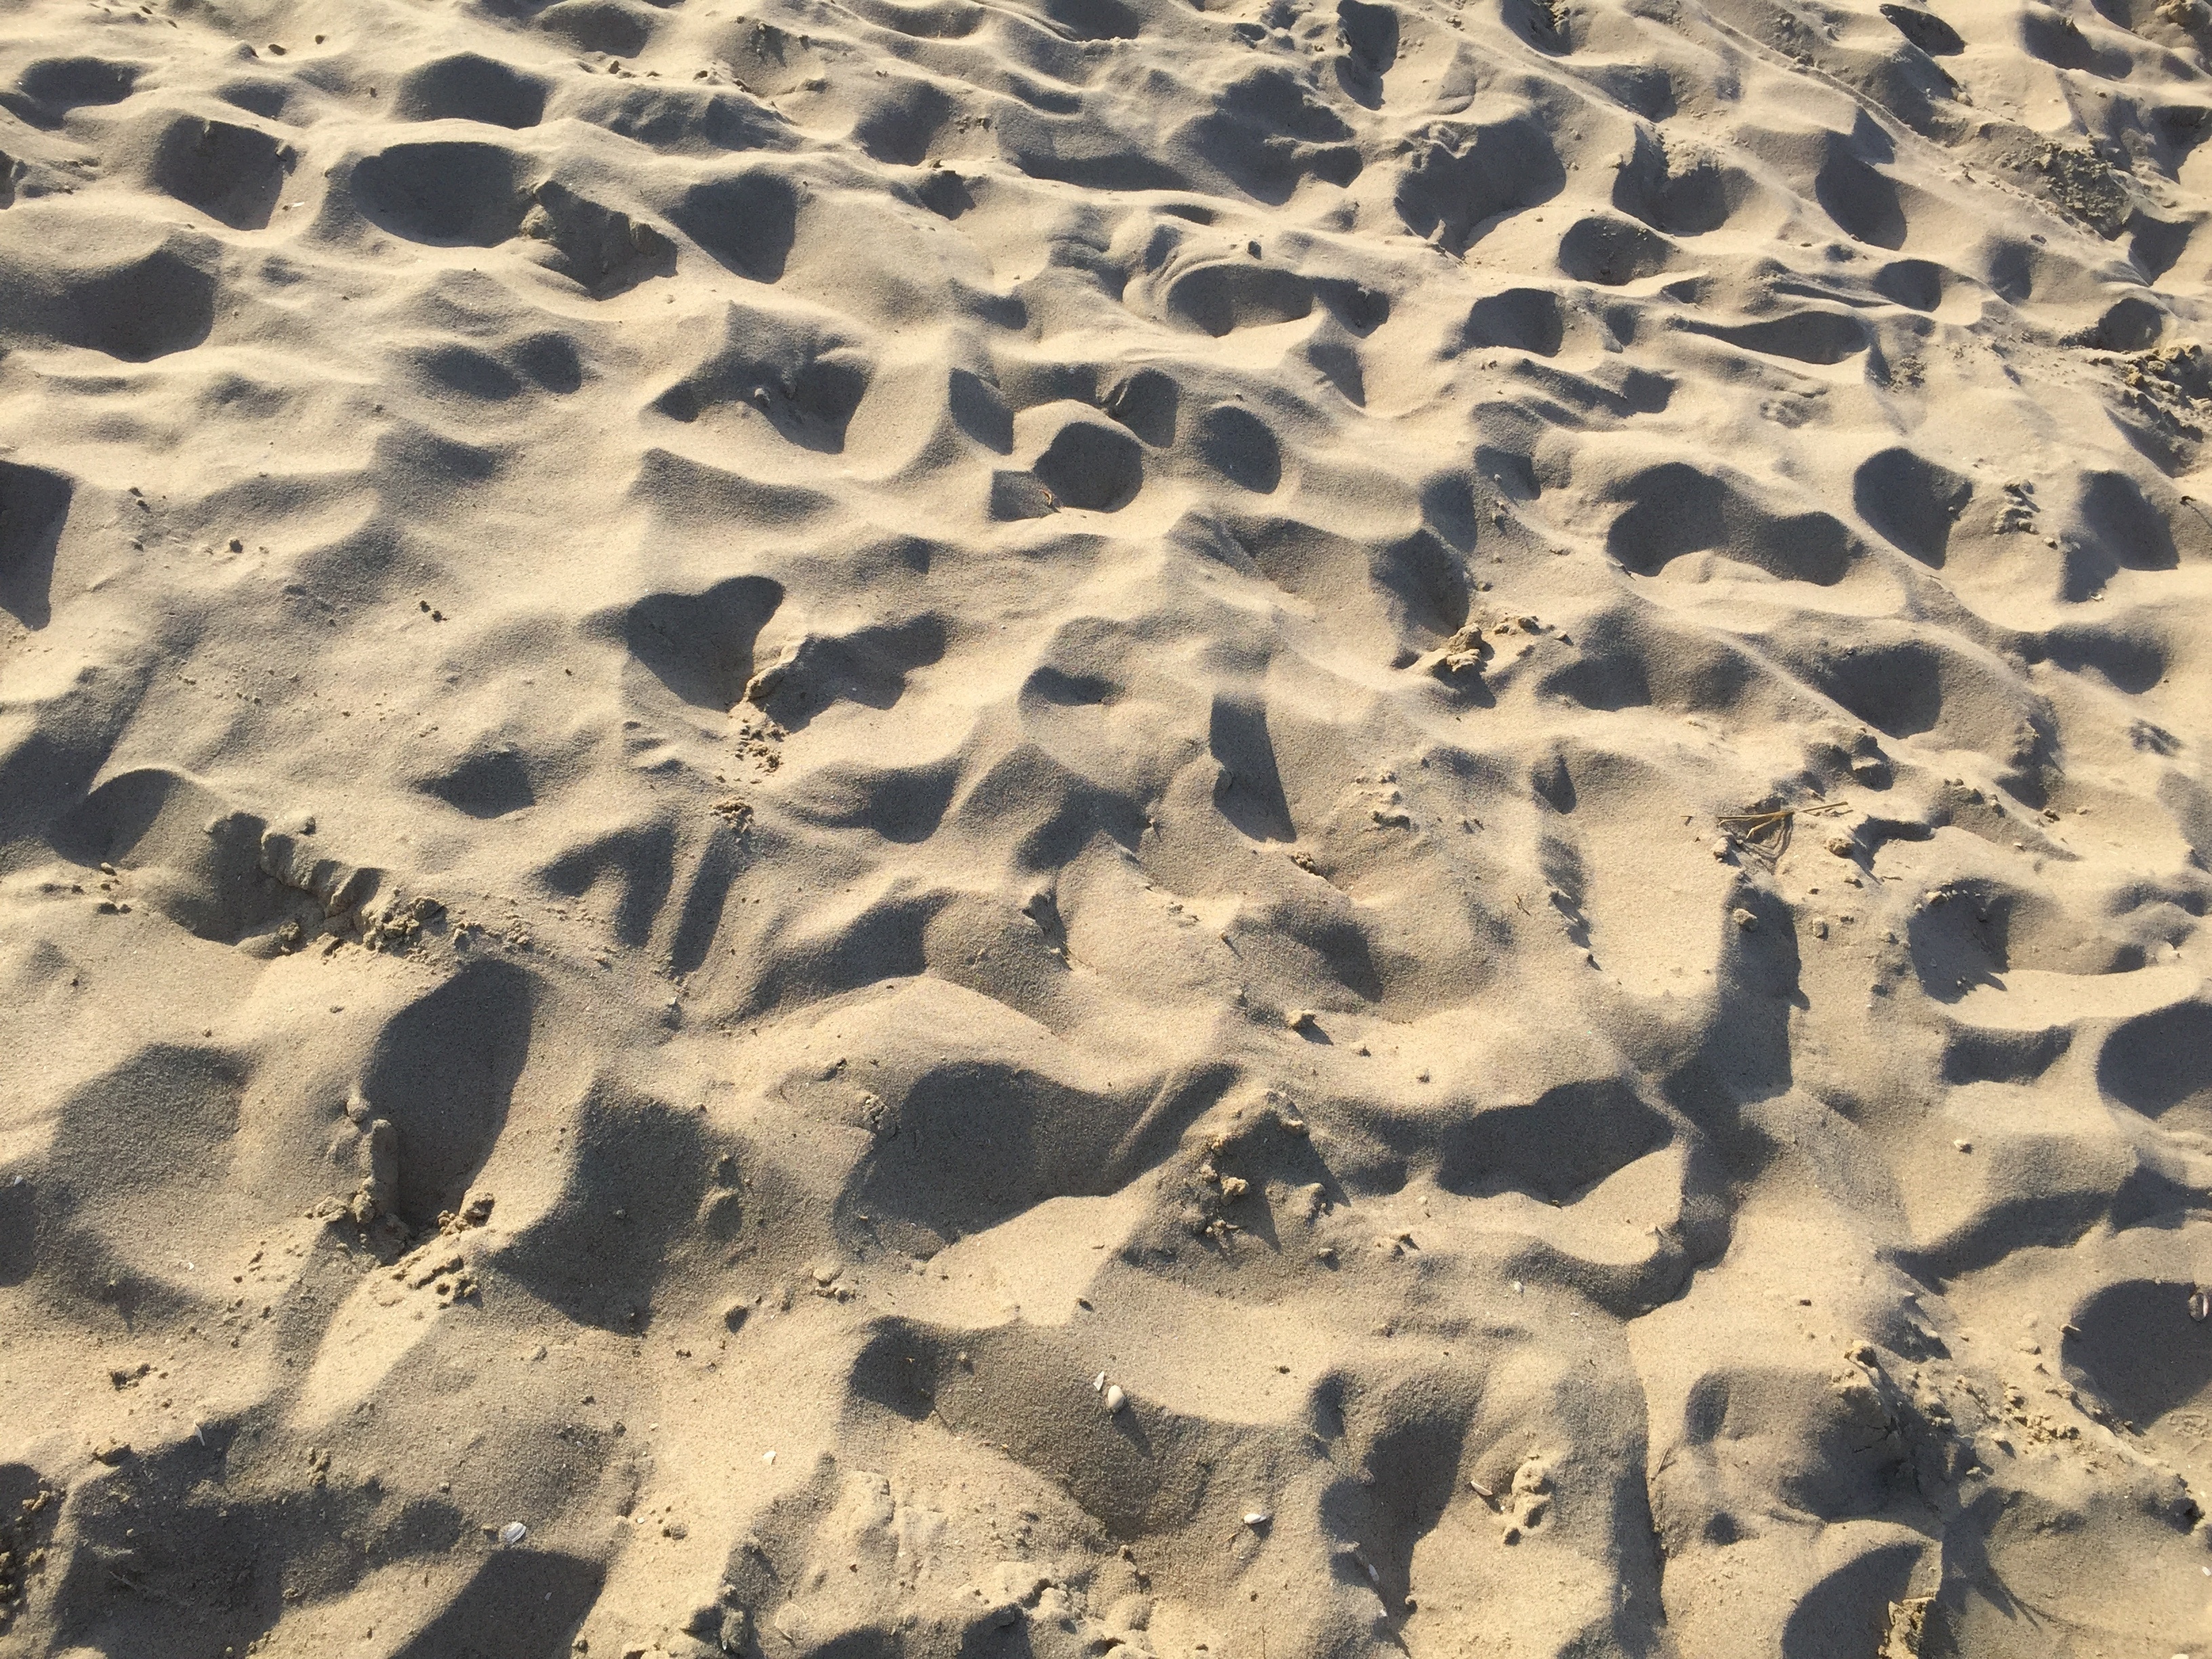 beige sand